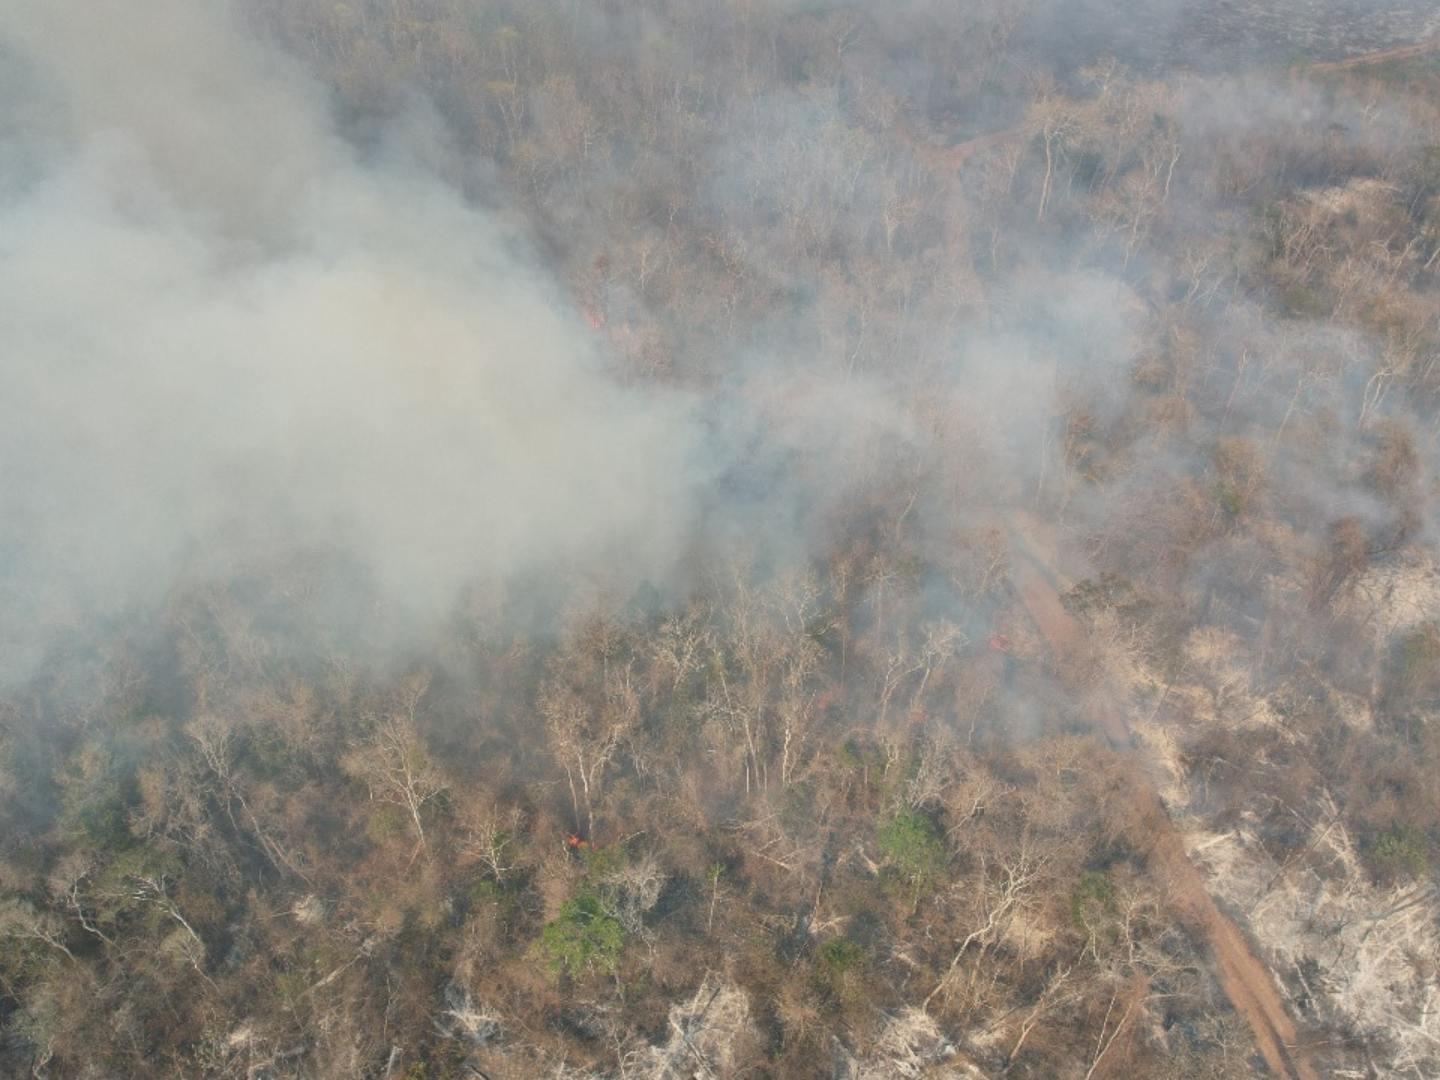 Incendios Forestales en Campeche Devastan Miles de Hectáreas de Selvas y Pastizales